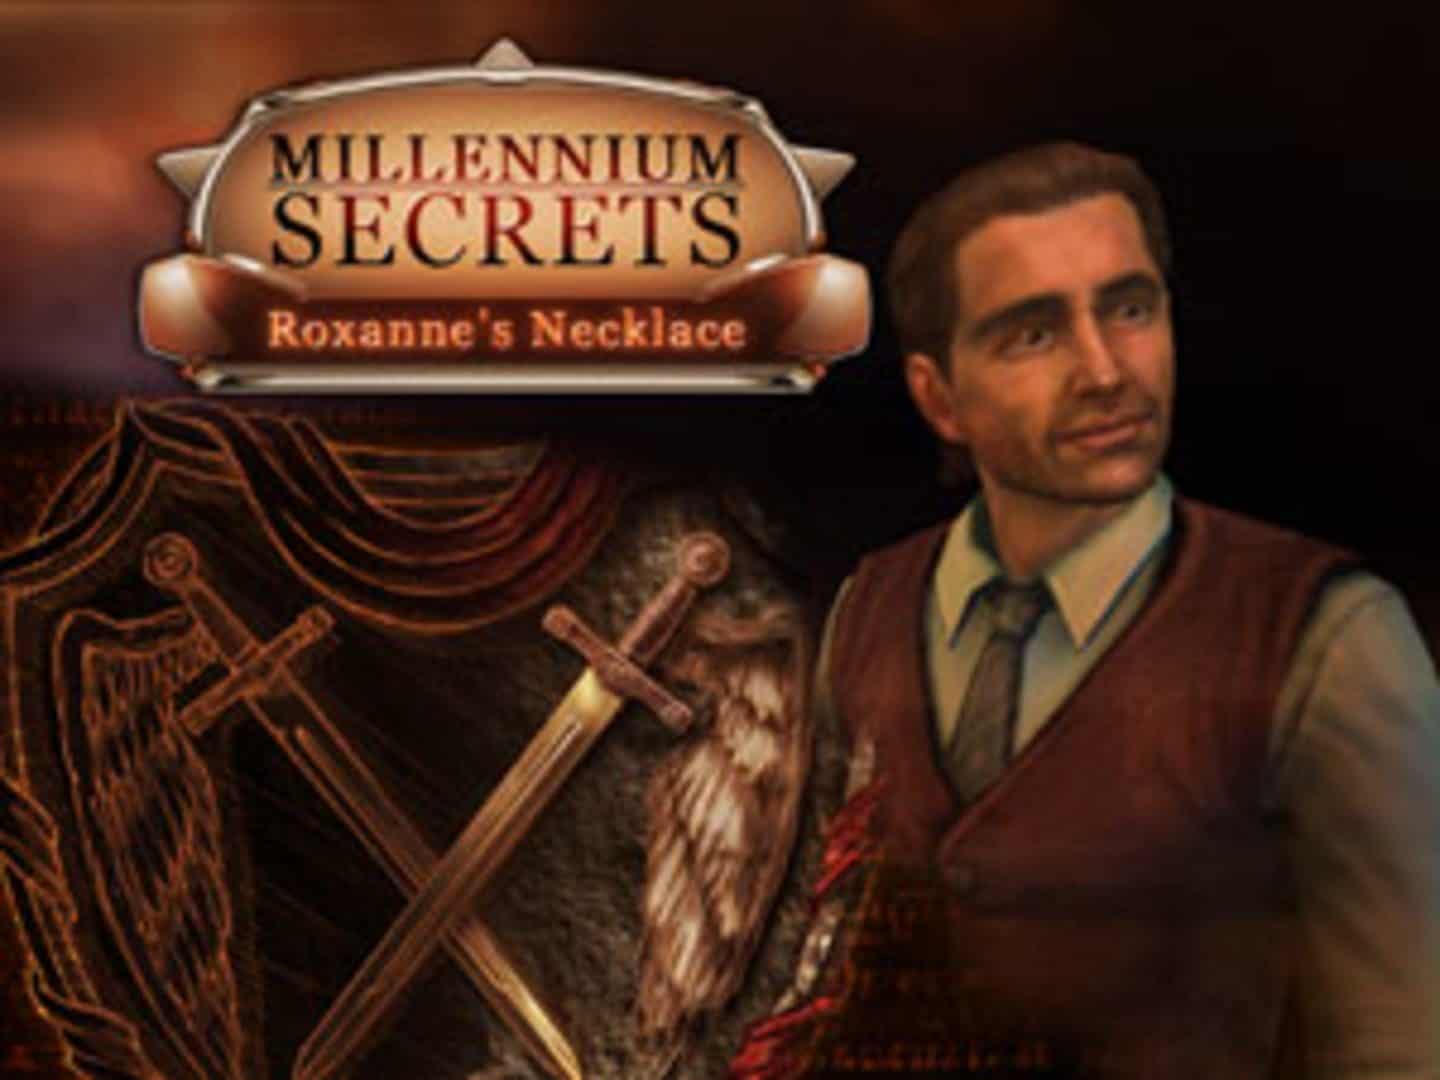 Millenium Secrets, Roxanne's Necklace